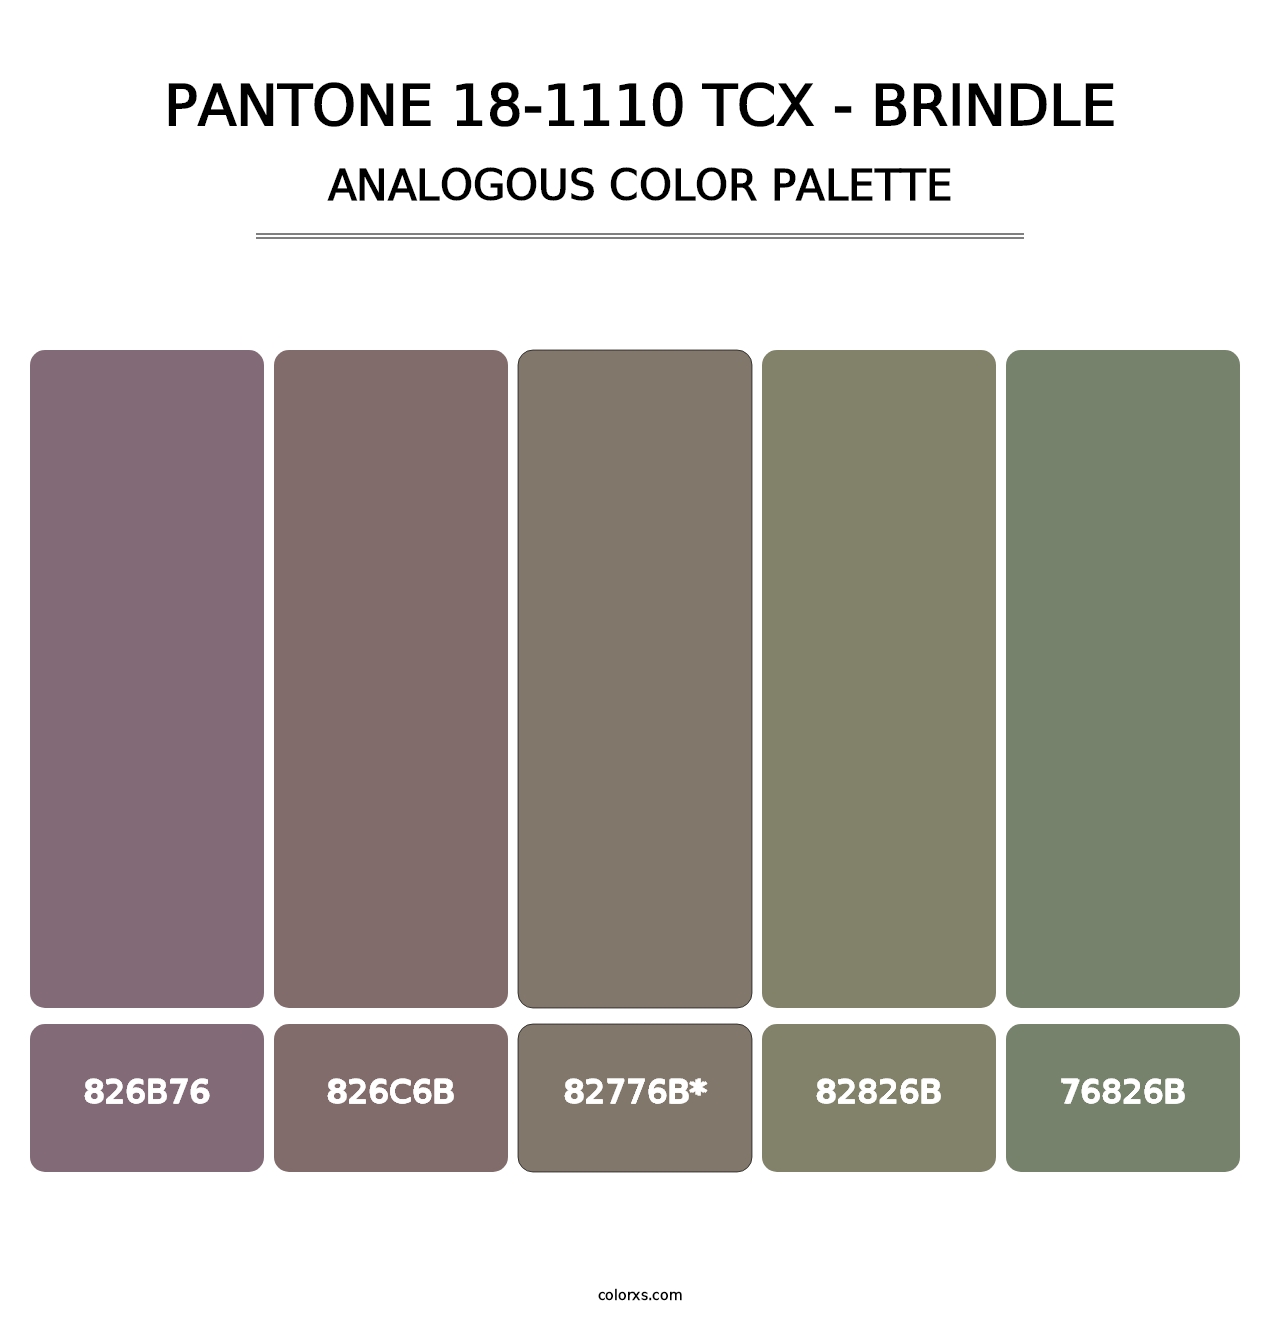 PANTONE 18-1110 TCX - Brindle - Analogous Color Palette